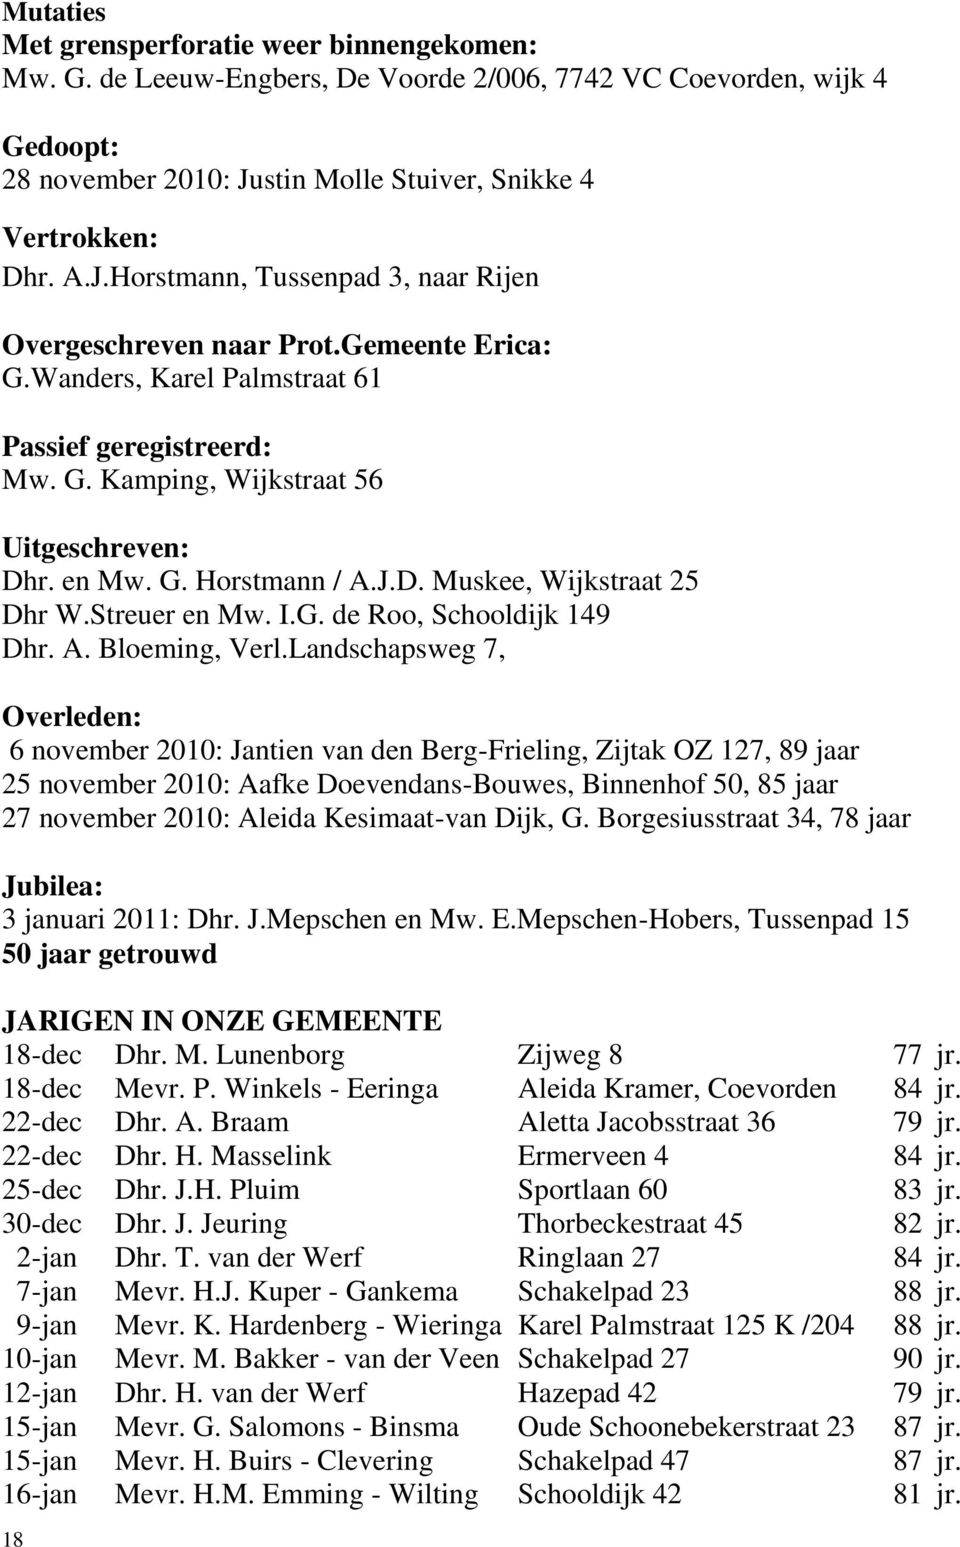 en Mw. G. Horstmann / A.J.D. Muskee, Wijkstraat 25 Dhr W.Streuer en Mw. I.G. de Roo, Schooldijk 149 Dhr. A. Bloeming, Verl.